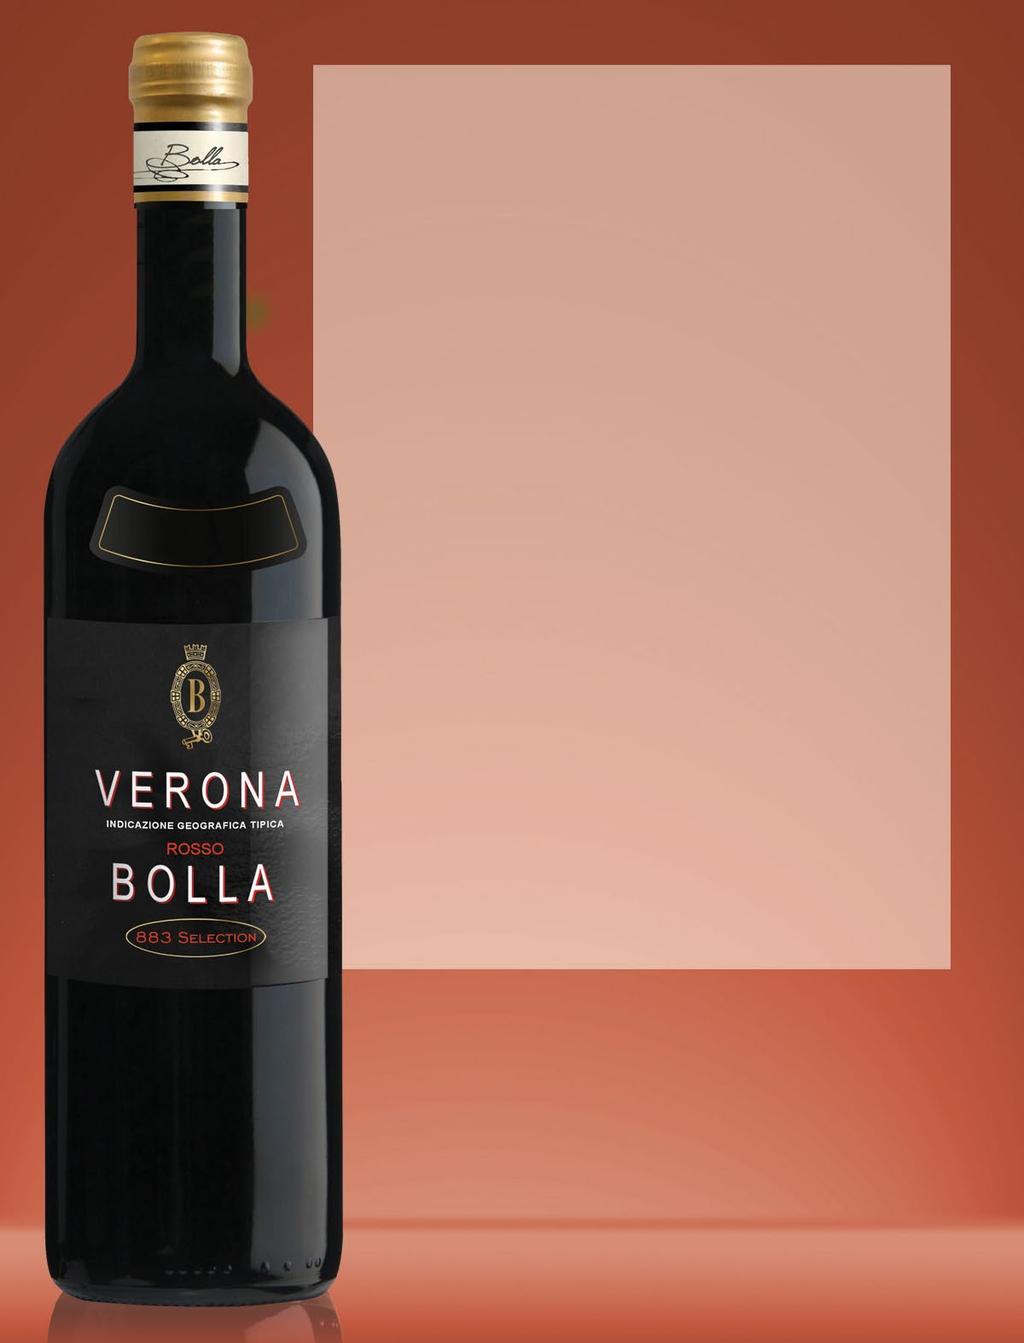 S U P E R P R E M I U M T I E R VERONA ROSSO 883 DESCRIPTION SHEET Verona Rosso IGT Production Area: Grape Varieties: Description: Verona province in the Veneto region.